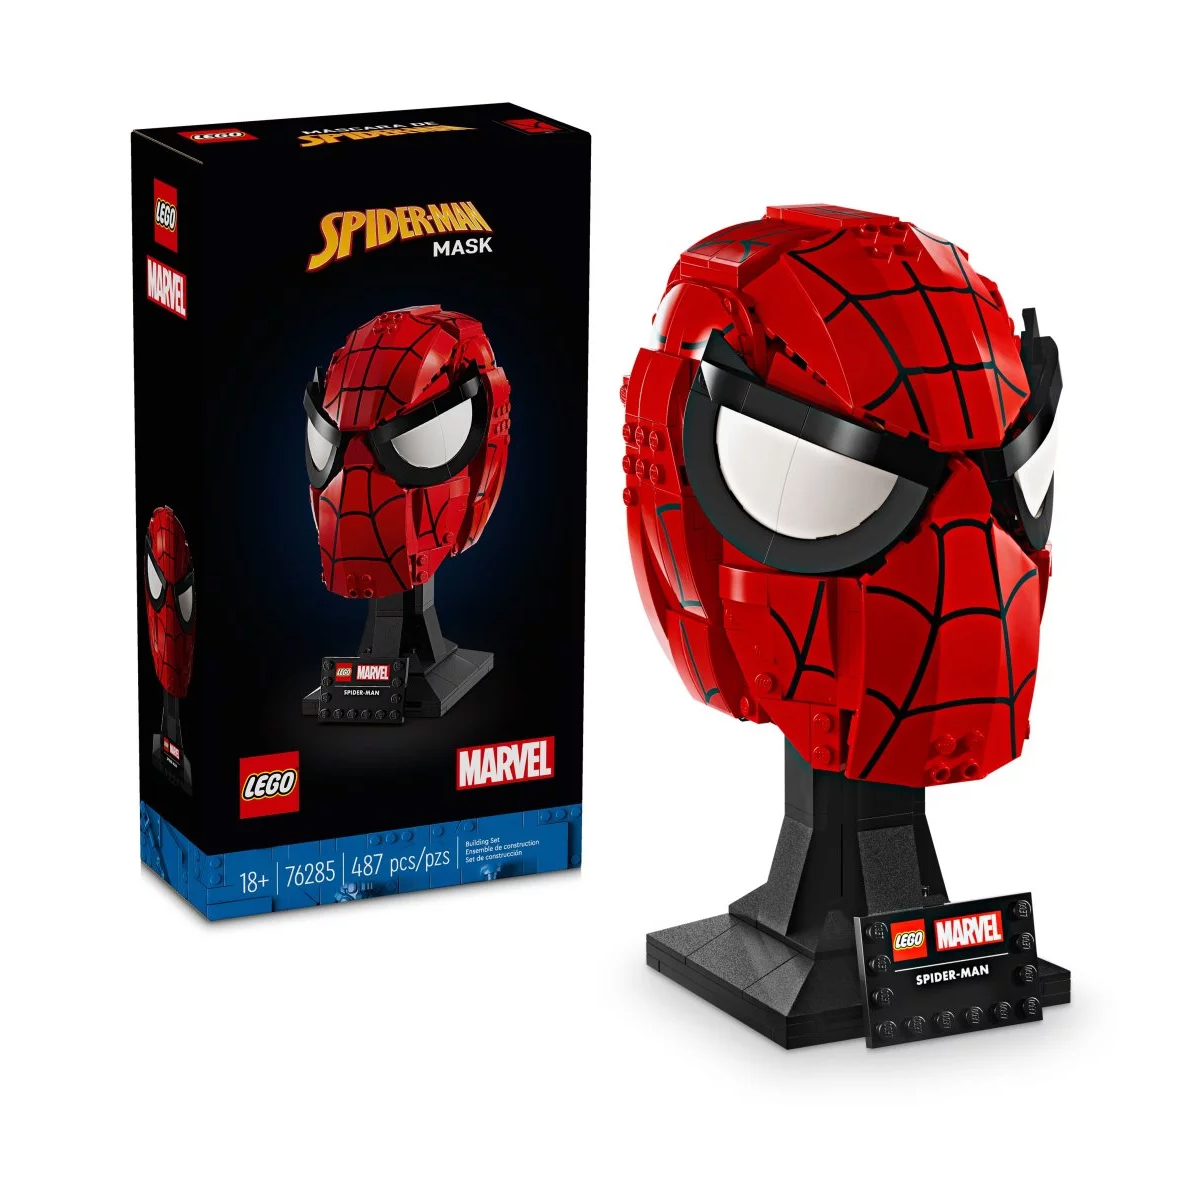 Конструктор Lego Spider-Man's Mask 76285, 487 деталей конструктор lego marvel super heroes 76195 дуэль дронов человека паука